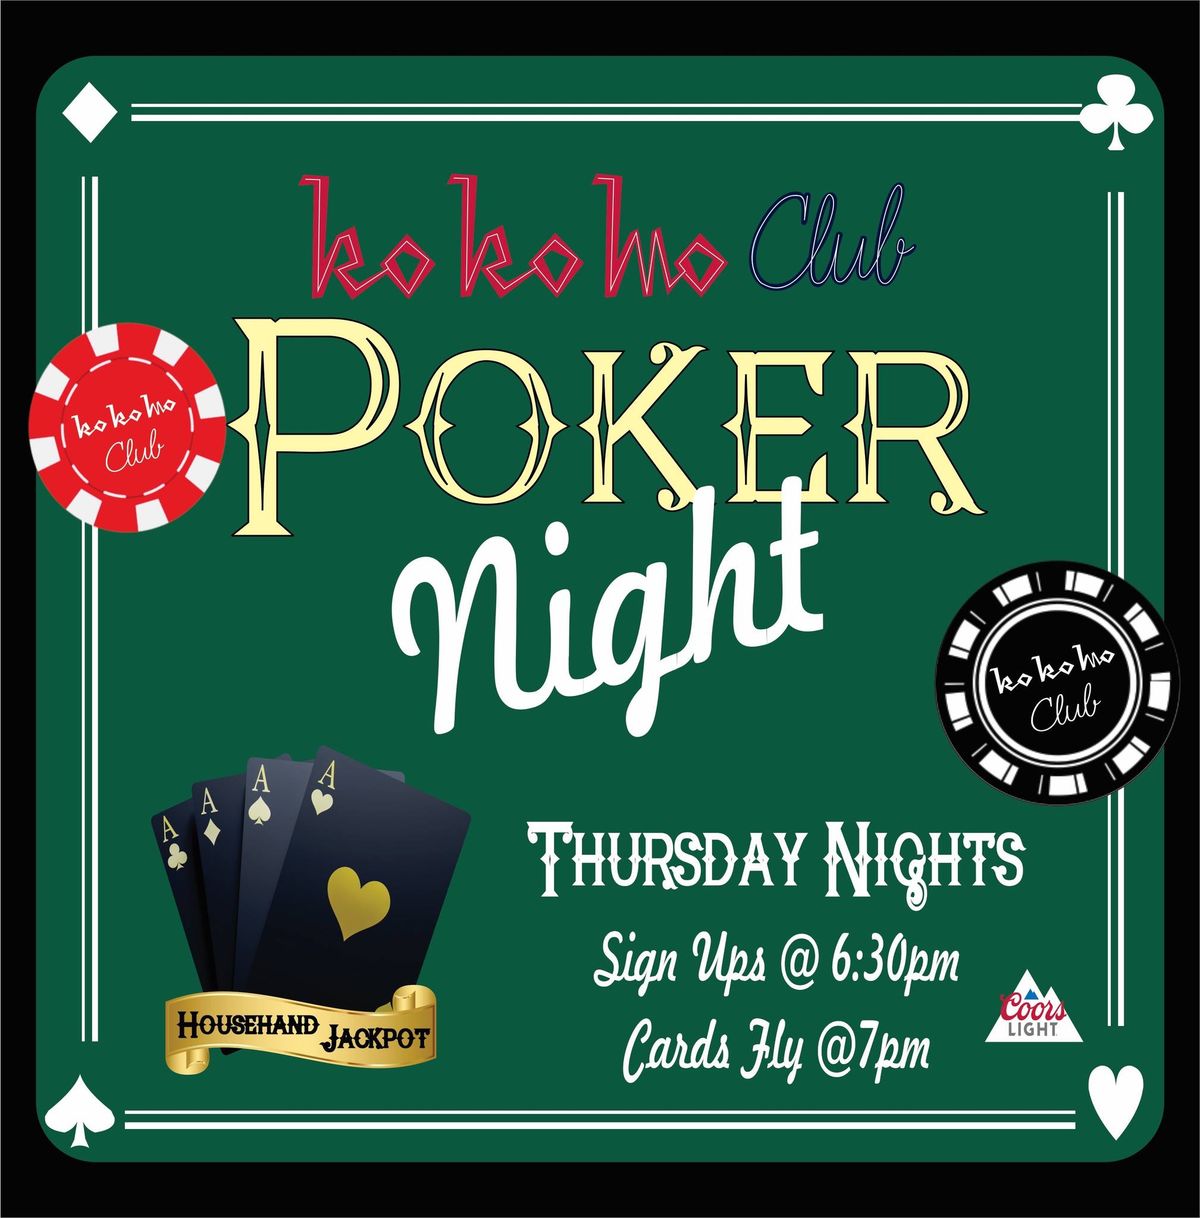 Texas Holdem Free Poker at KoKoMo Club